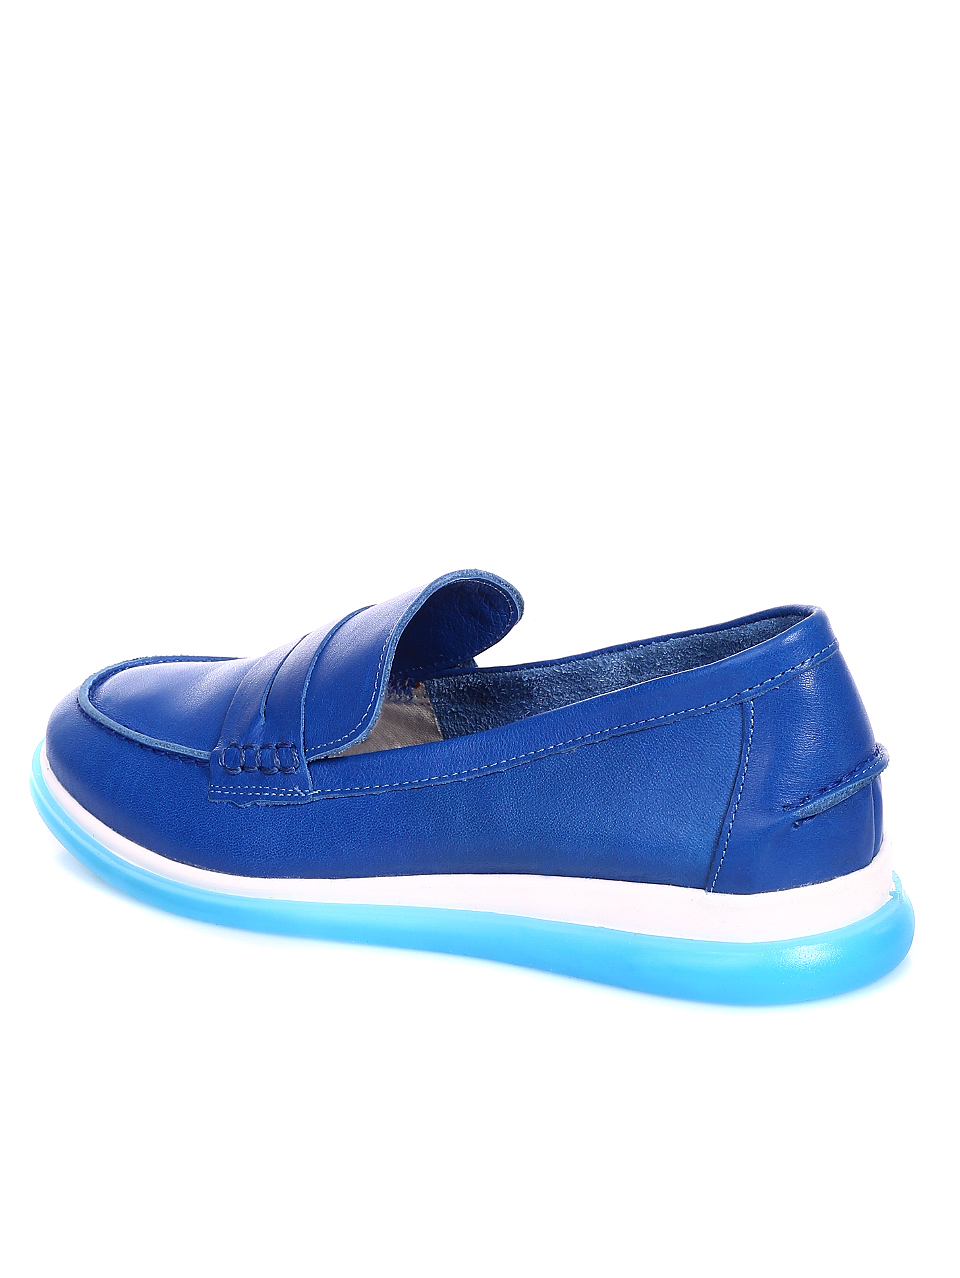 Ежедневни дамски обувки от естествена кожа 3AT-20486 blue